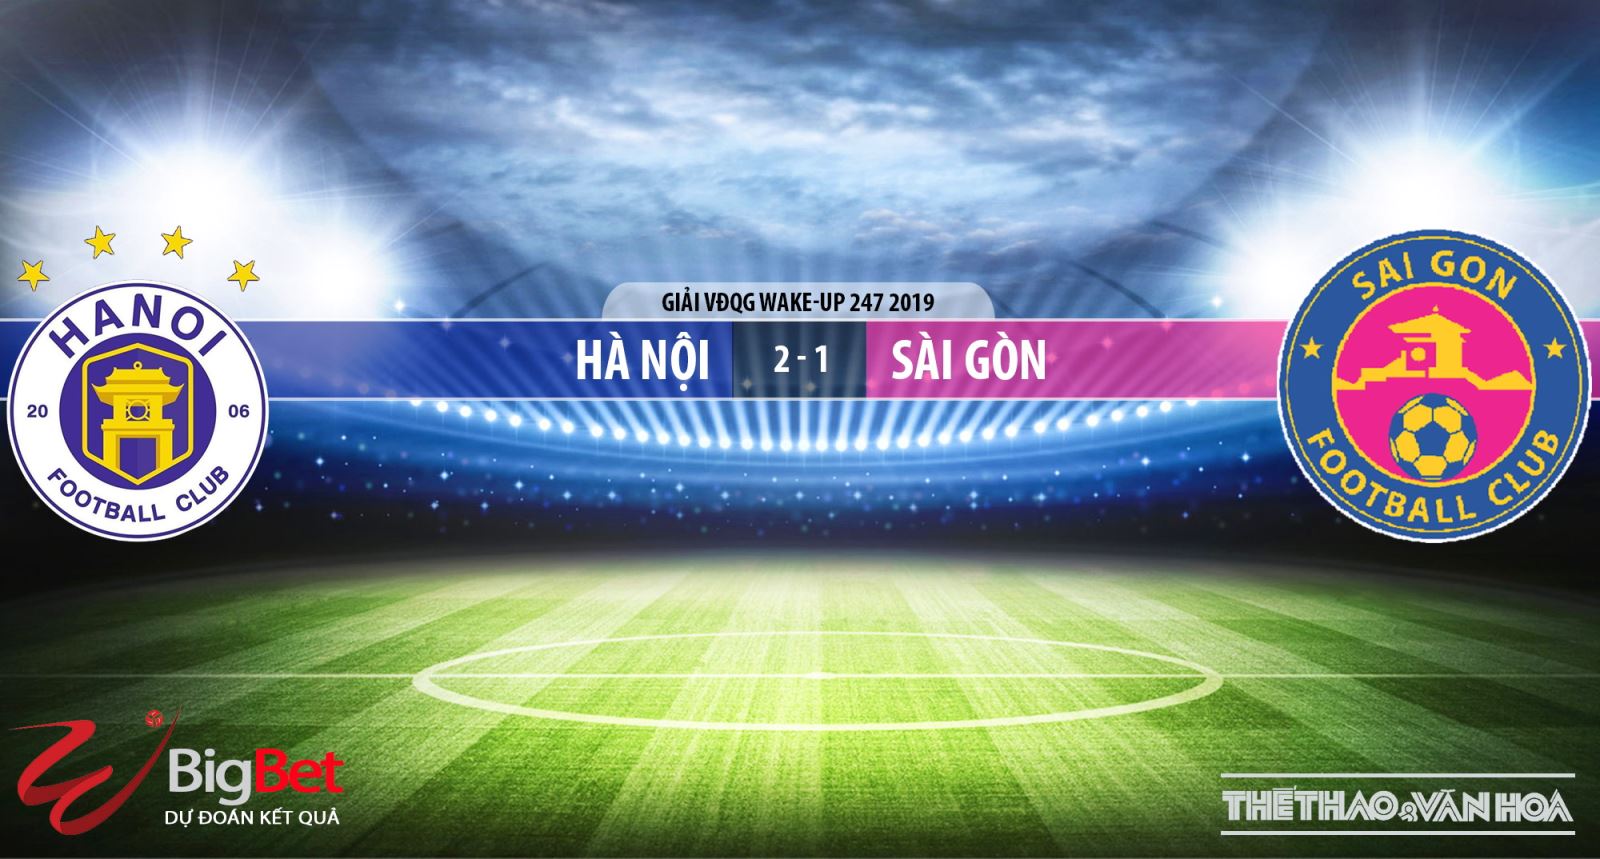 VTV6, VTV6 trực tiếp bóng đá, truc tiep bong da, trực tiếp bóng đá, Hf Nội đấu với Sài Gòn, Ha Noi vs Sai Gon, Sài Gòn, Hà Nội FC, bảng xếp hạng V League 2019, BĐTV, FPT, TTTV